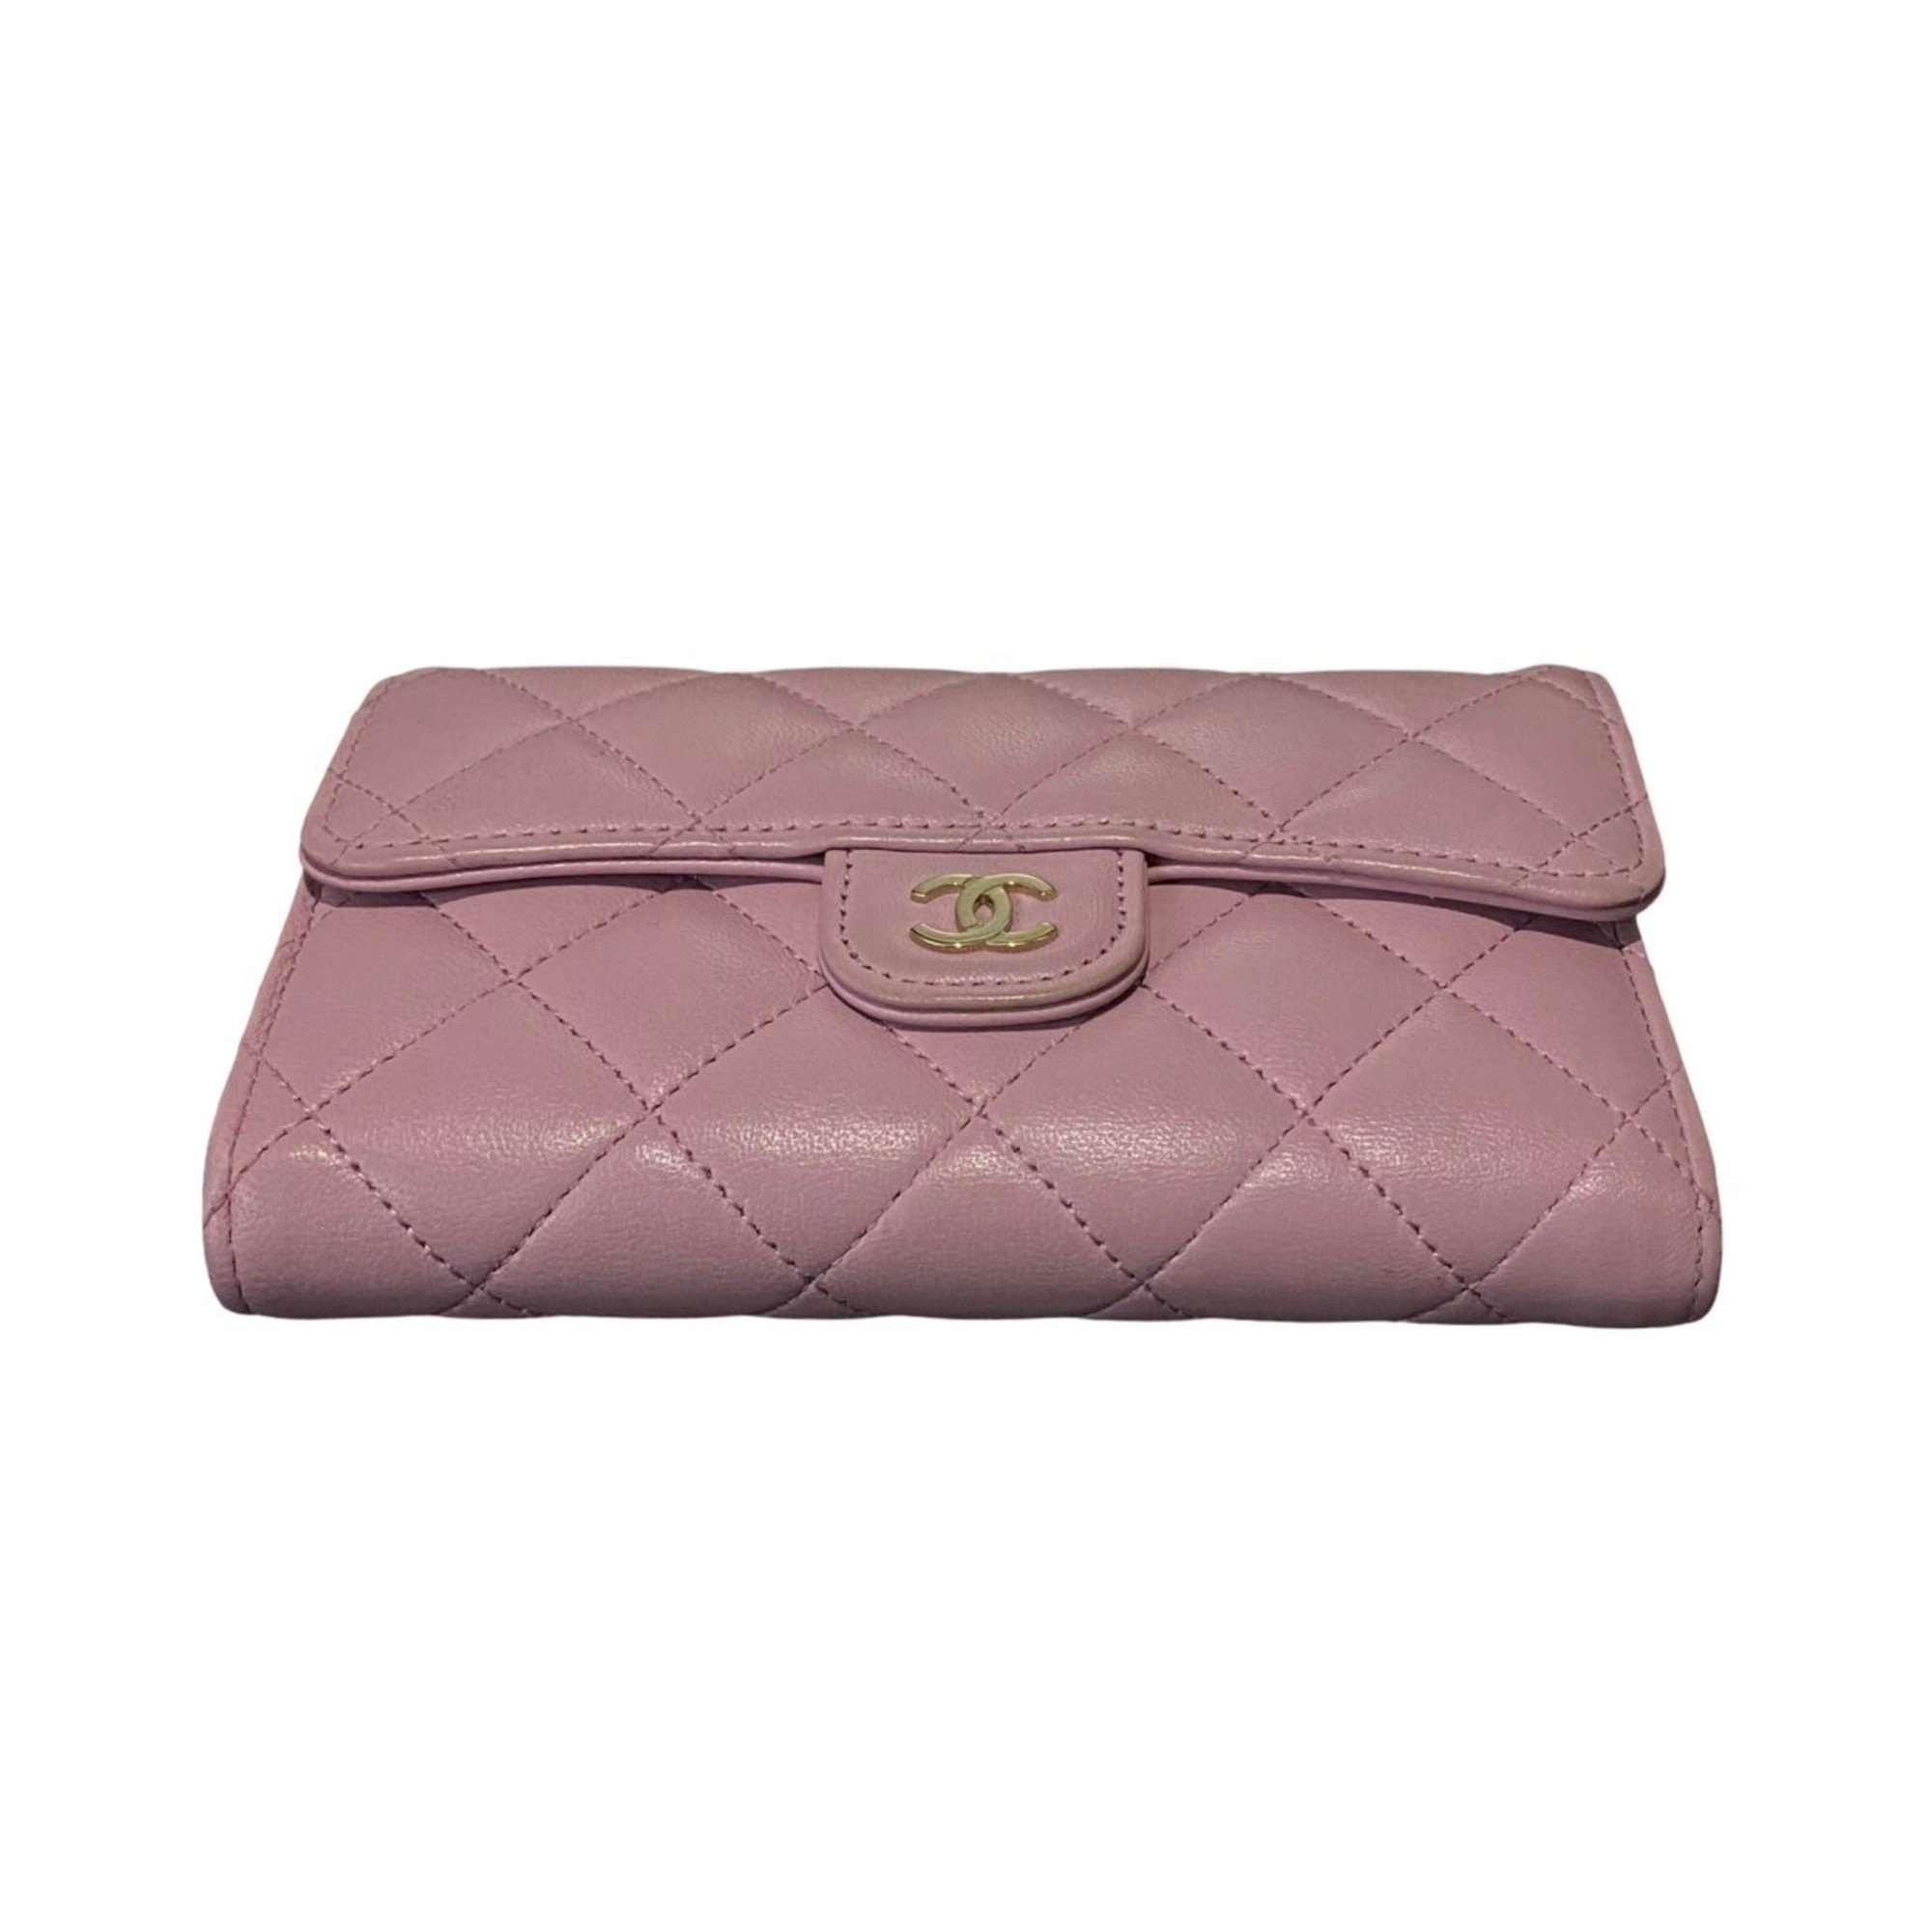 CHANEL Chanel Matelasse Lambskin Leather Bi-fold Wallet Pink 25648